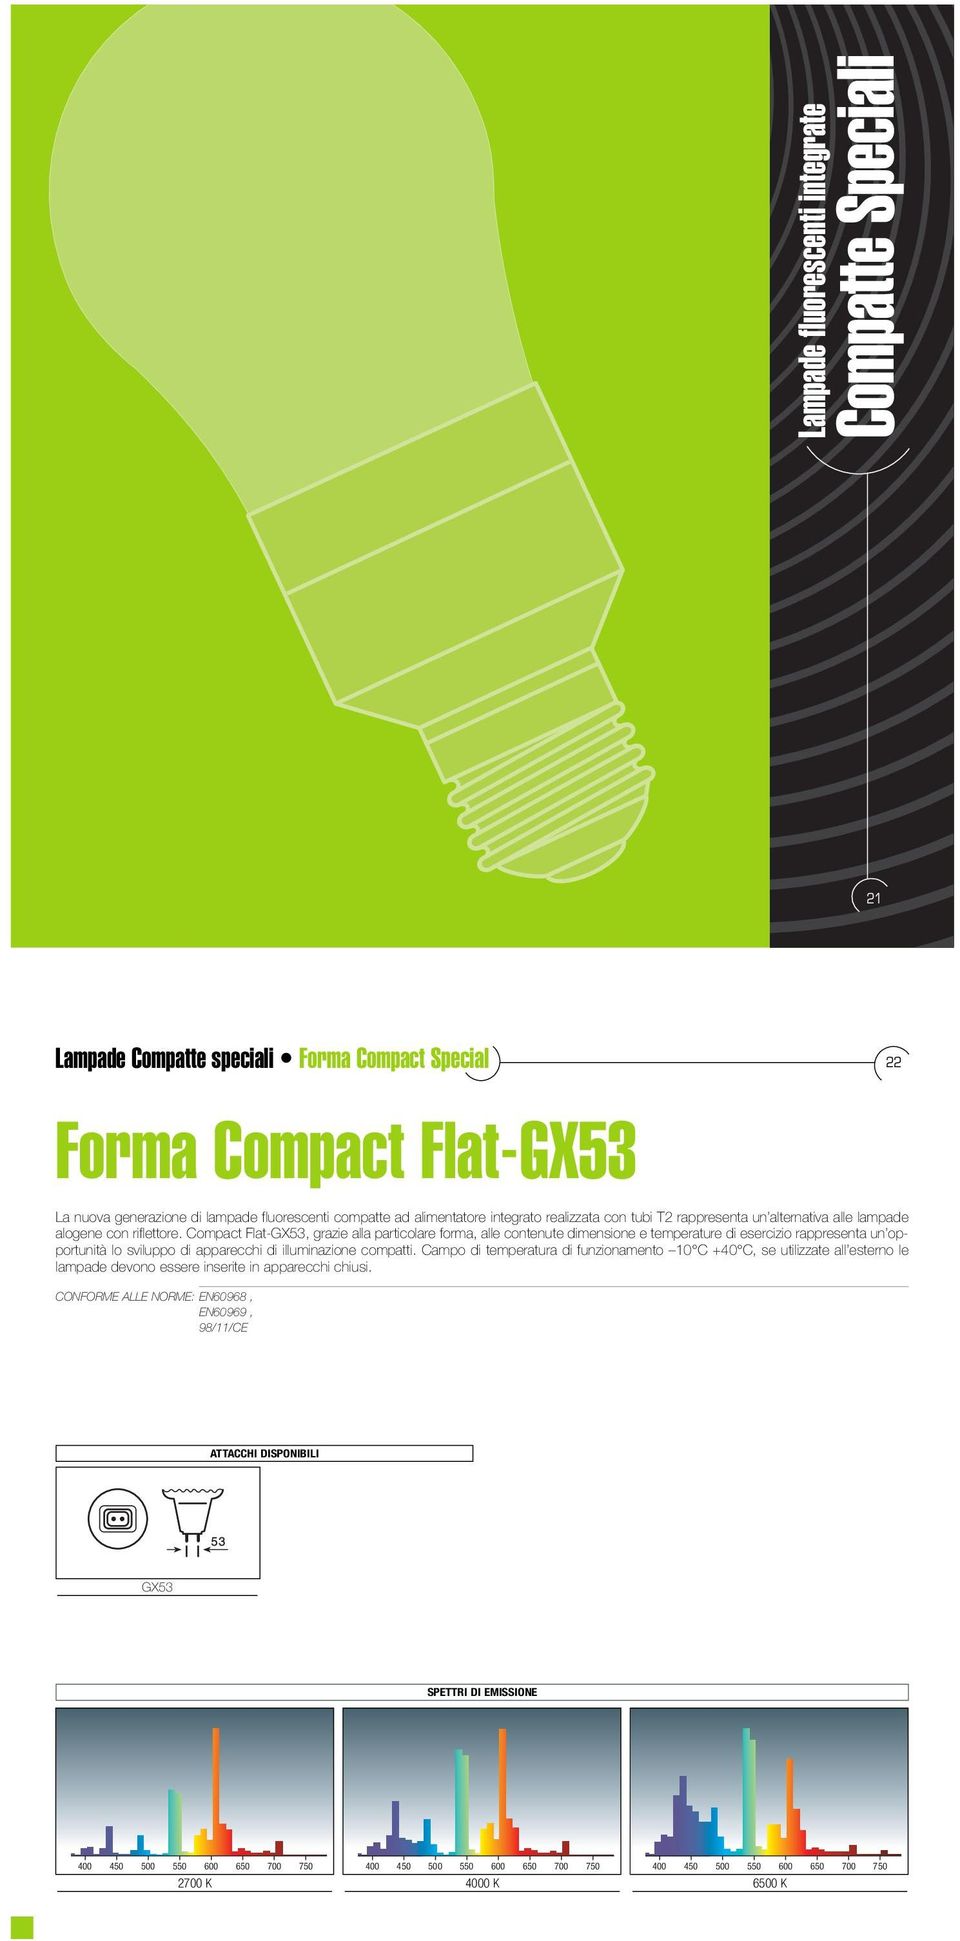 Compact Flat-GX53, grazie alla particolare forma, alle contenute dimensione e temperature di esercizio rappresenta un opportunità lo sviluppo di